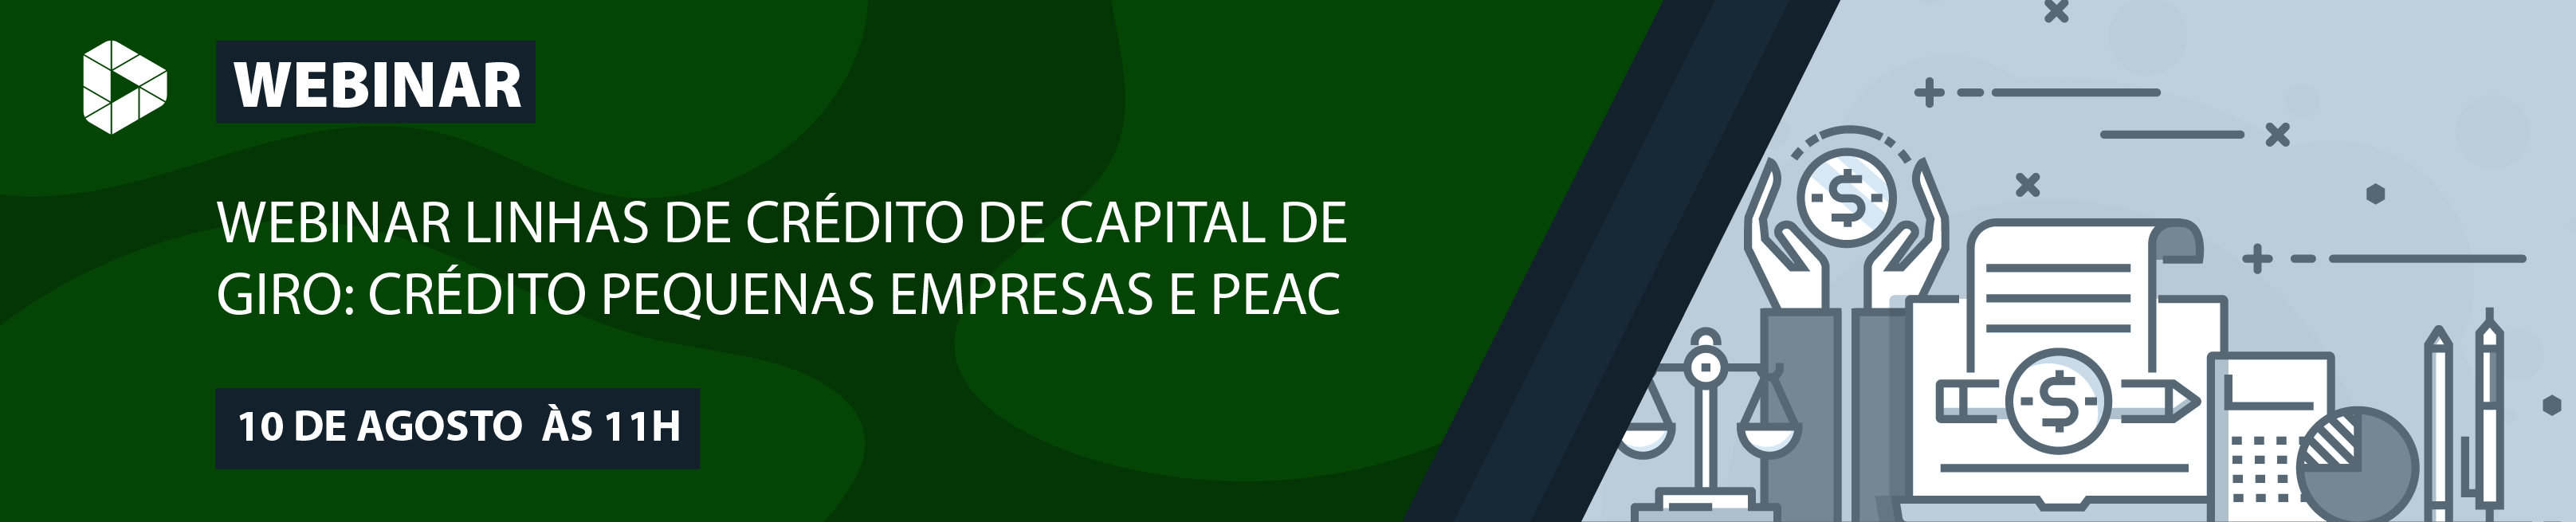 Webinar Linhas de Crédito de Capital de Giro: Crédito Pequenas Empresas e PEAC